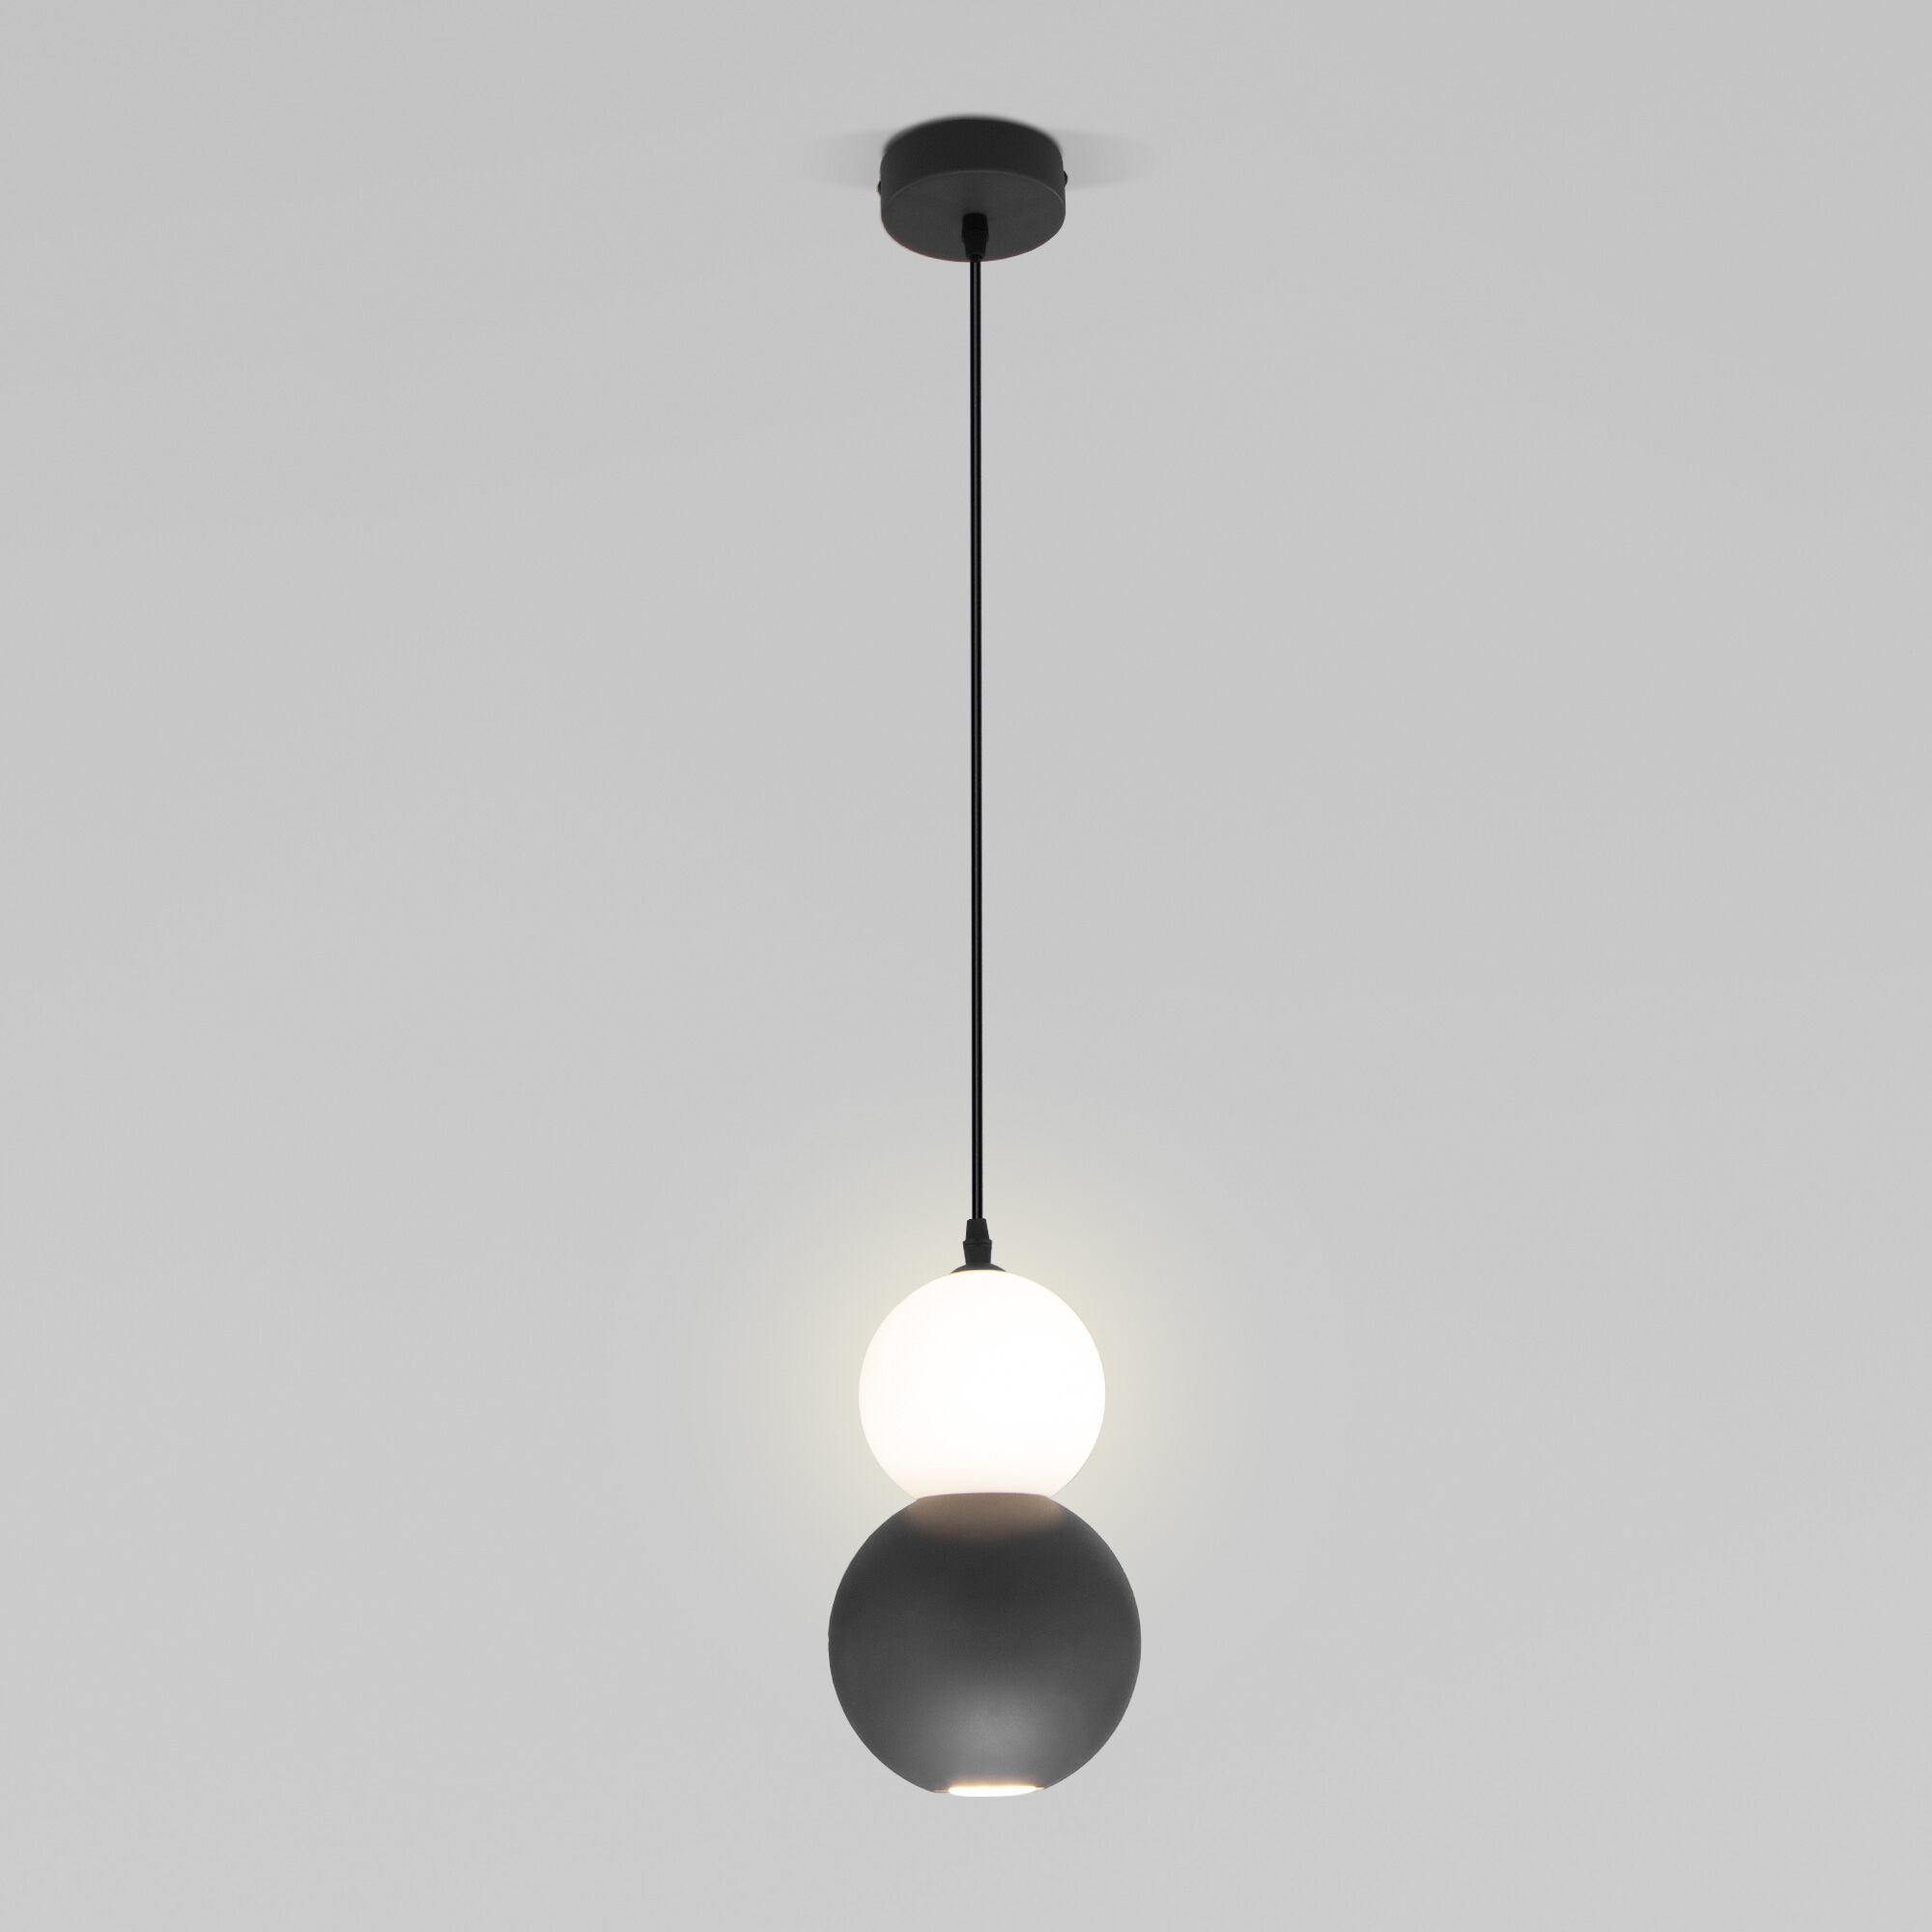 Светильник 15 см, Eurosvet 50251/1, серый